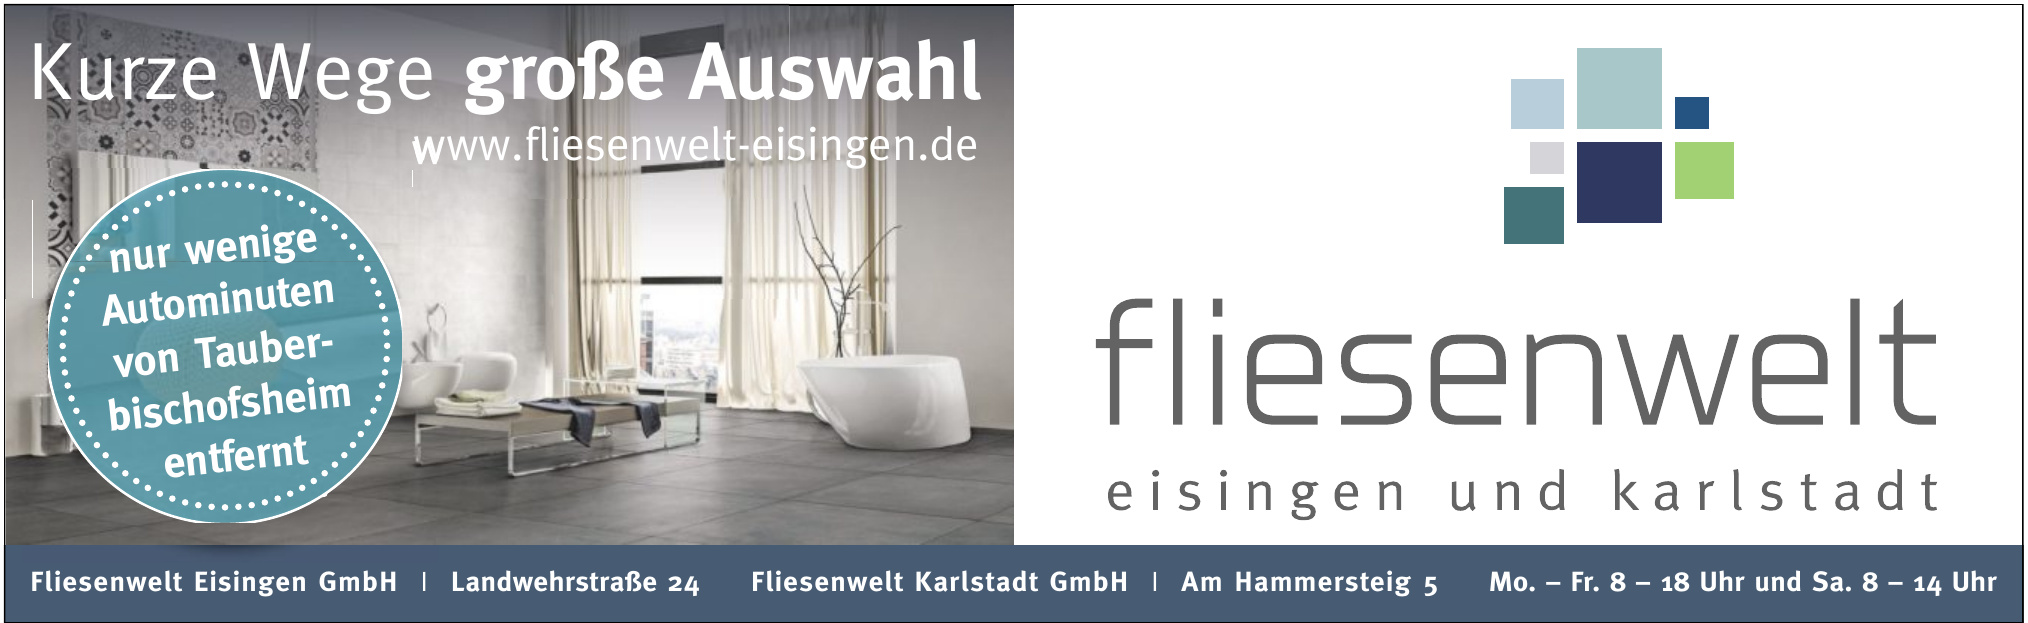 Fliesenwelt Eisingen GmbH